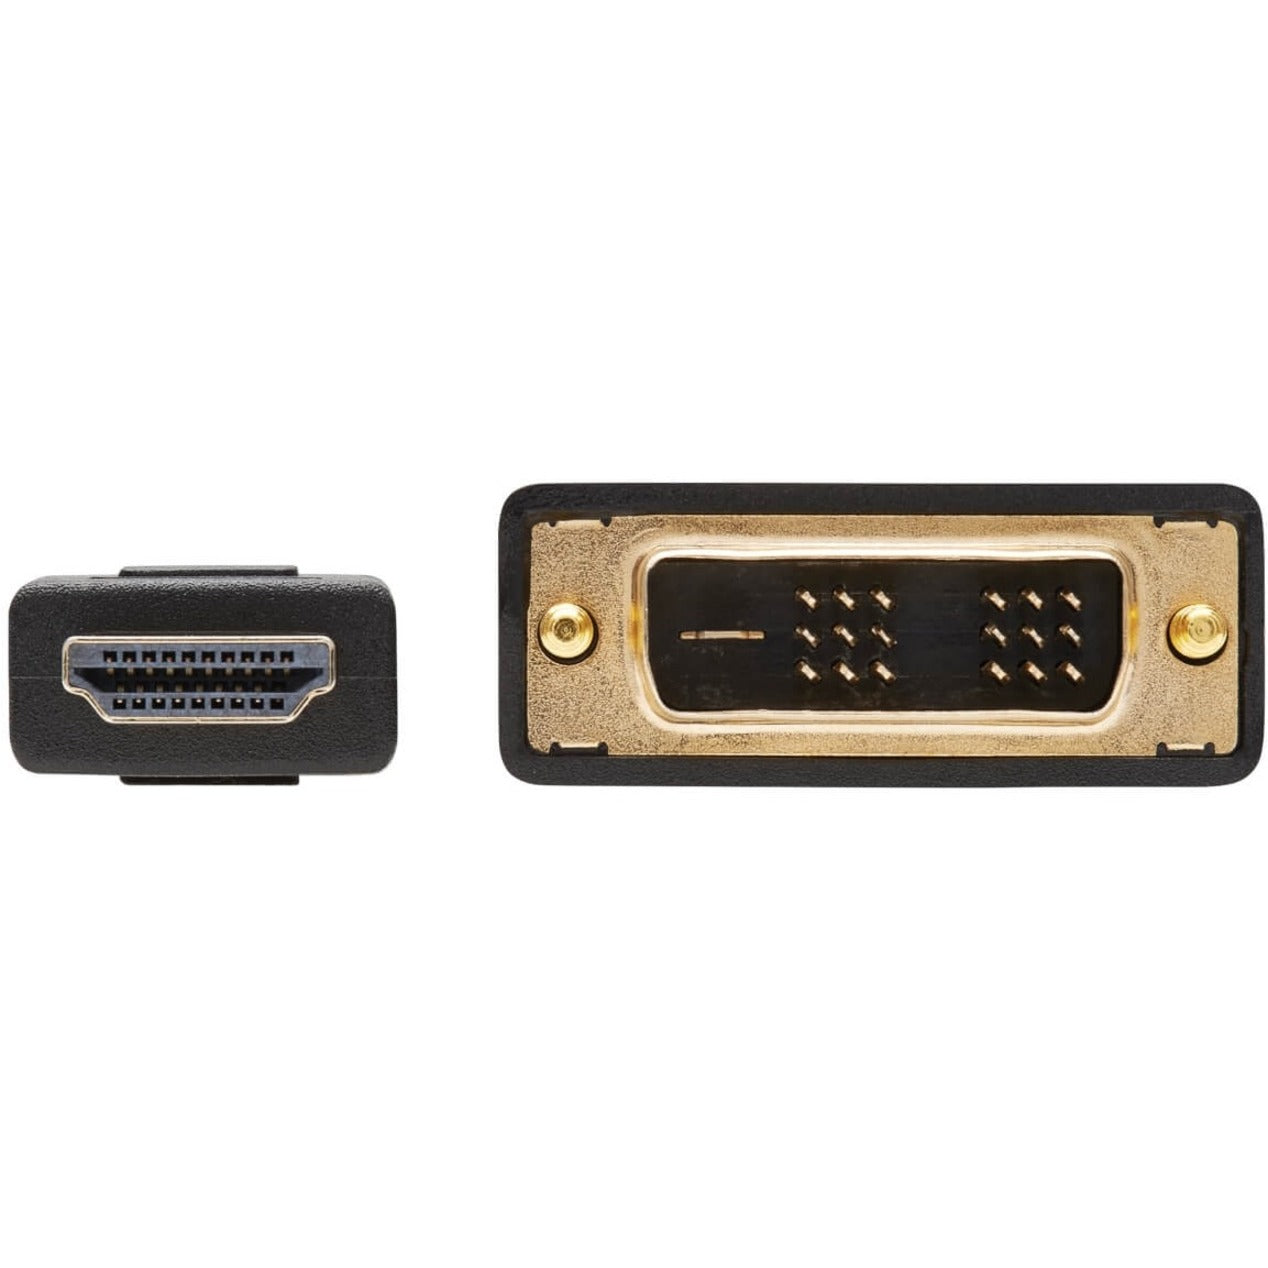 Tripp Lite P566-010 Gold Digital Video Kabel 10 ft HDMI zu DVI Stecker Kupferleiter